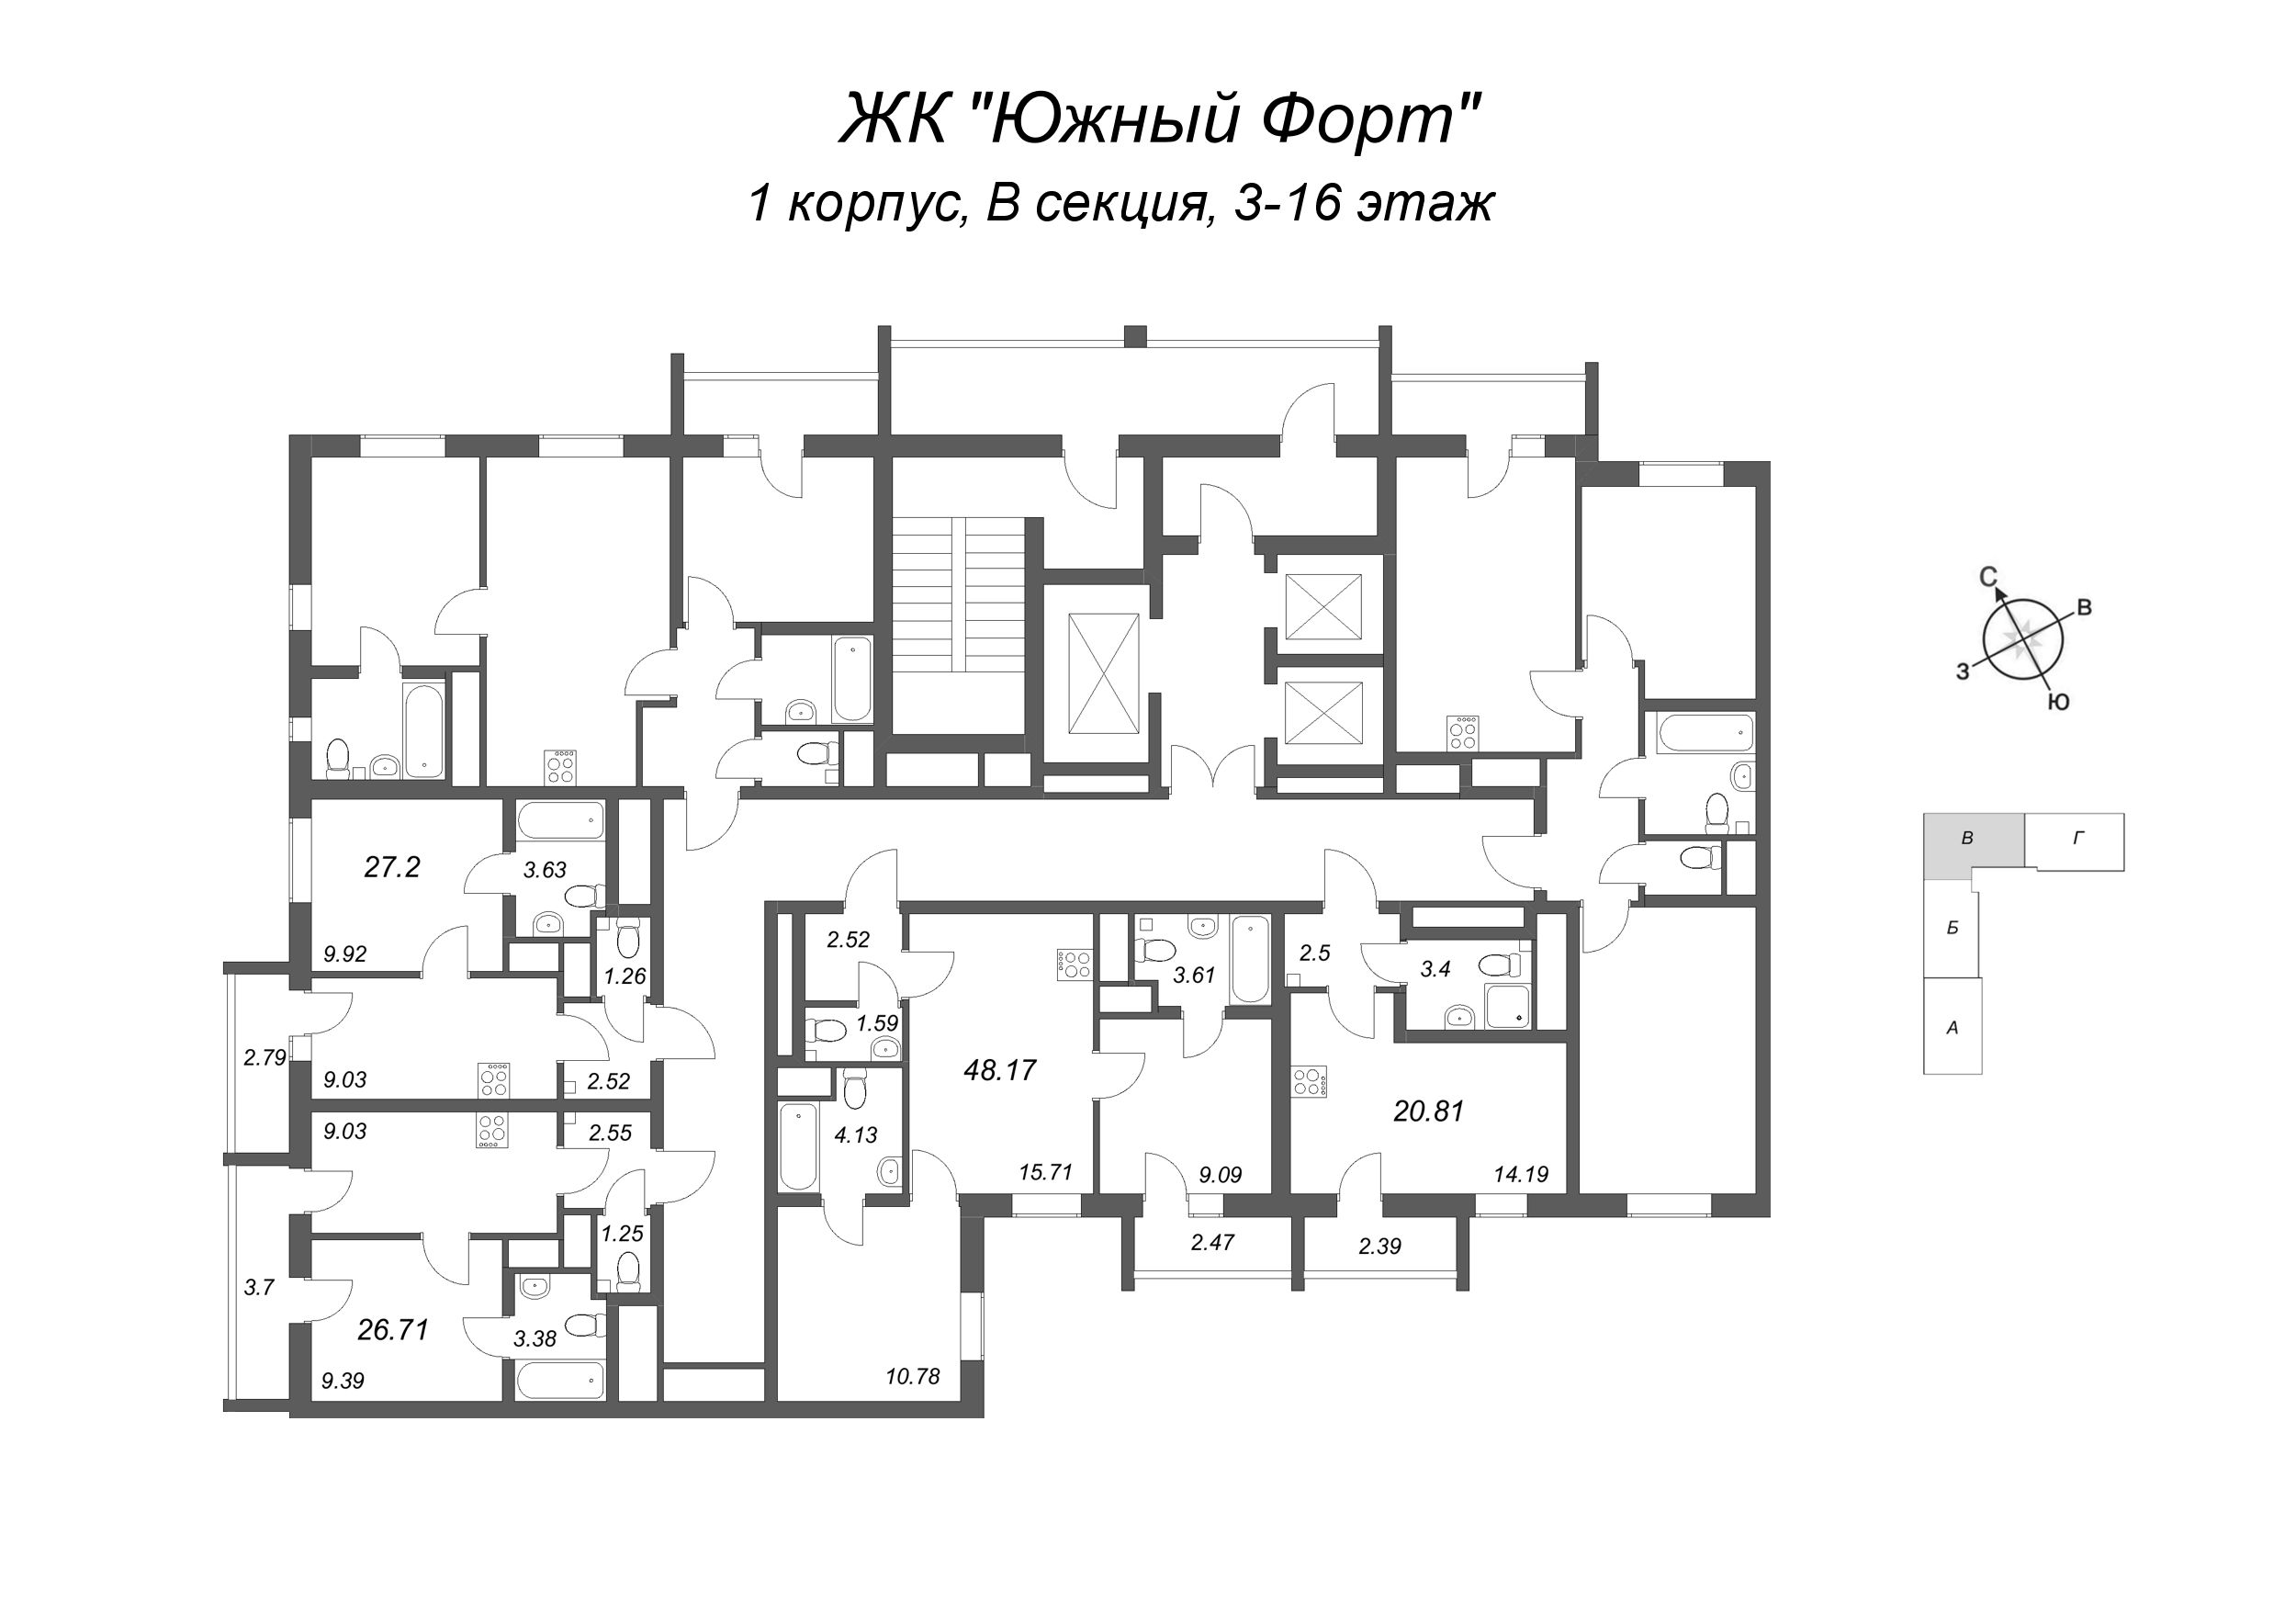 1-комнатная квартира, 27.2 м² в ЖК "Южный форт" - планировка этажа